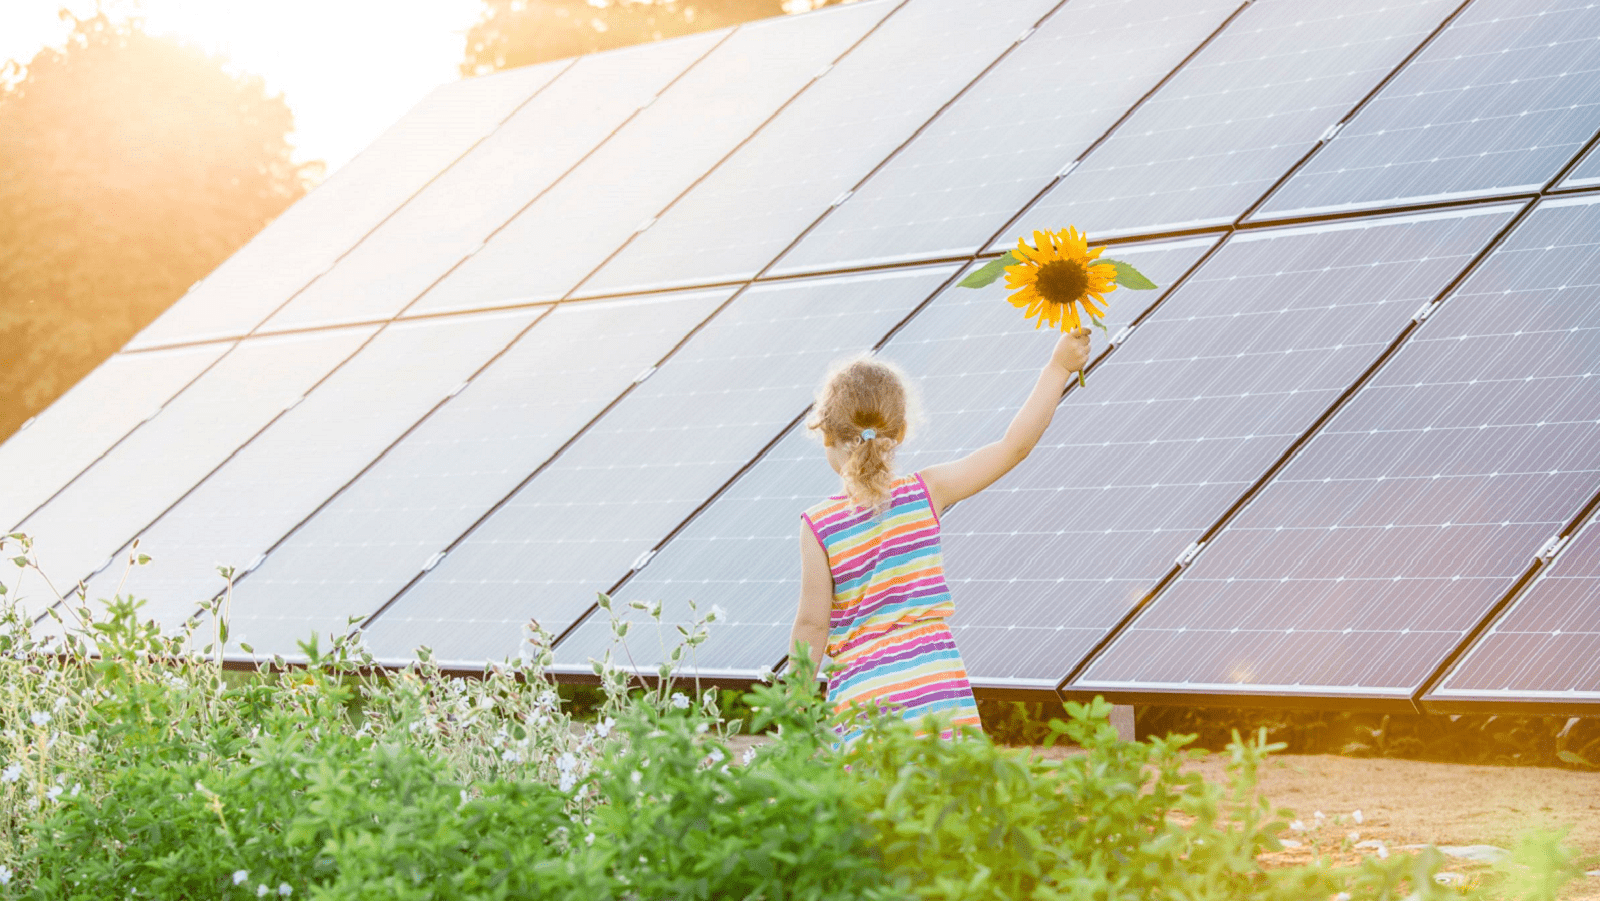 Pige med solsikkeblomst i hånden foran solcellepaneler i solskin